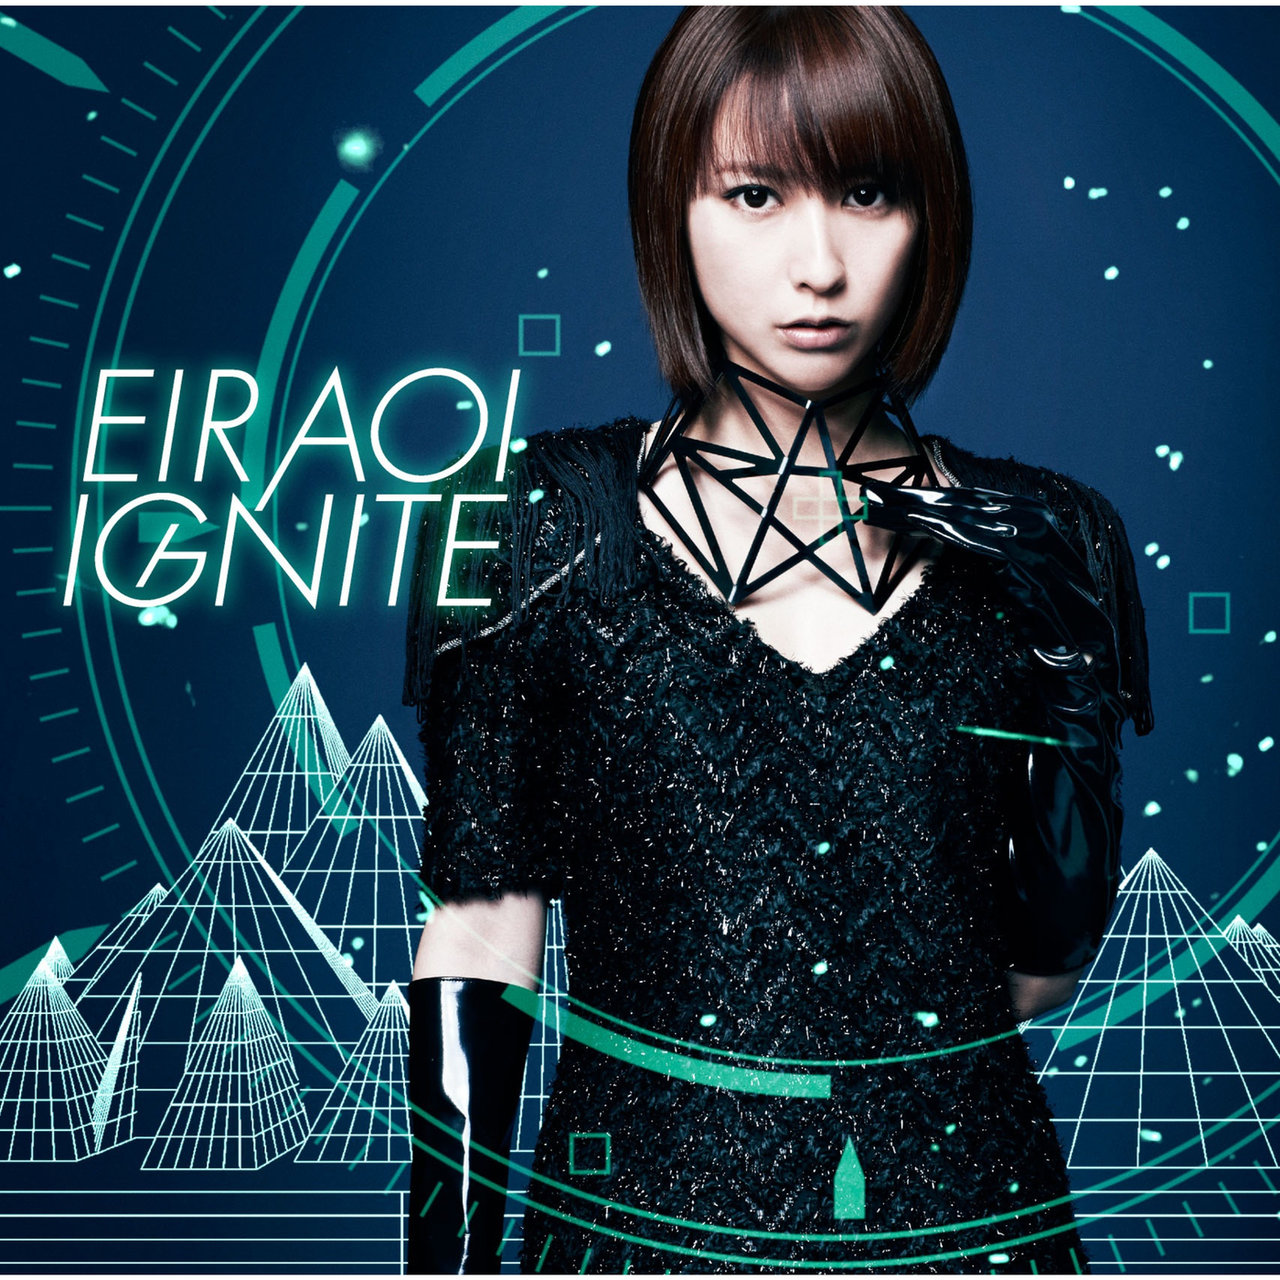 Eir Aoi Ignite cover artwork